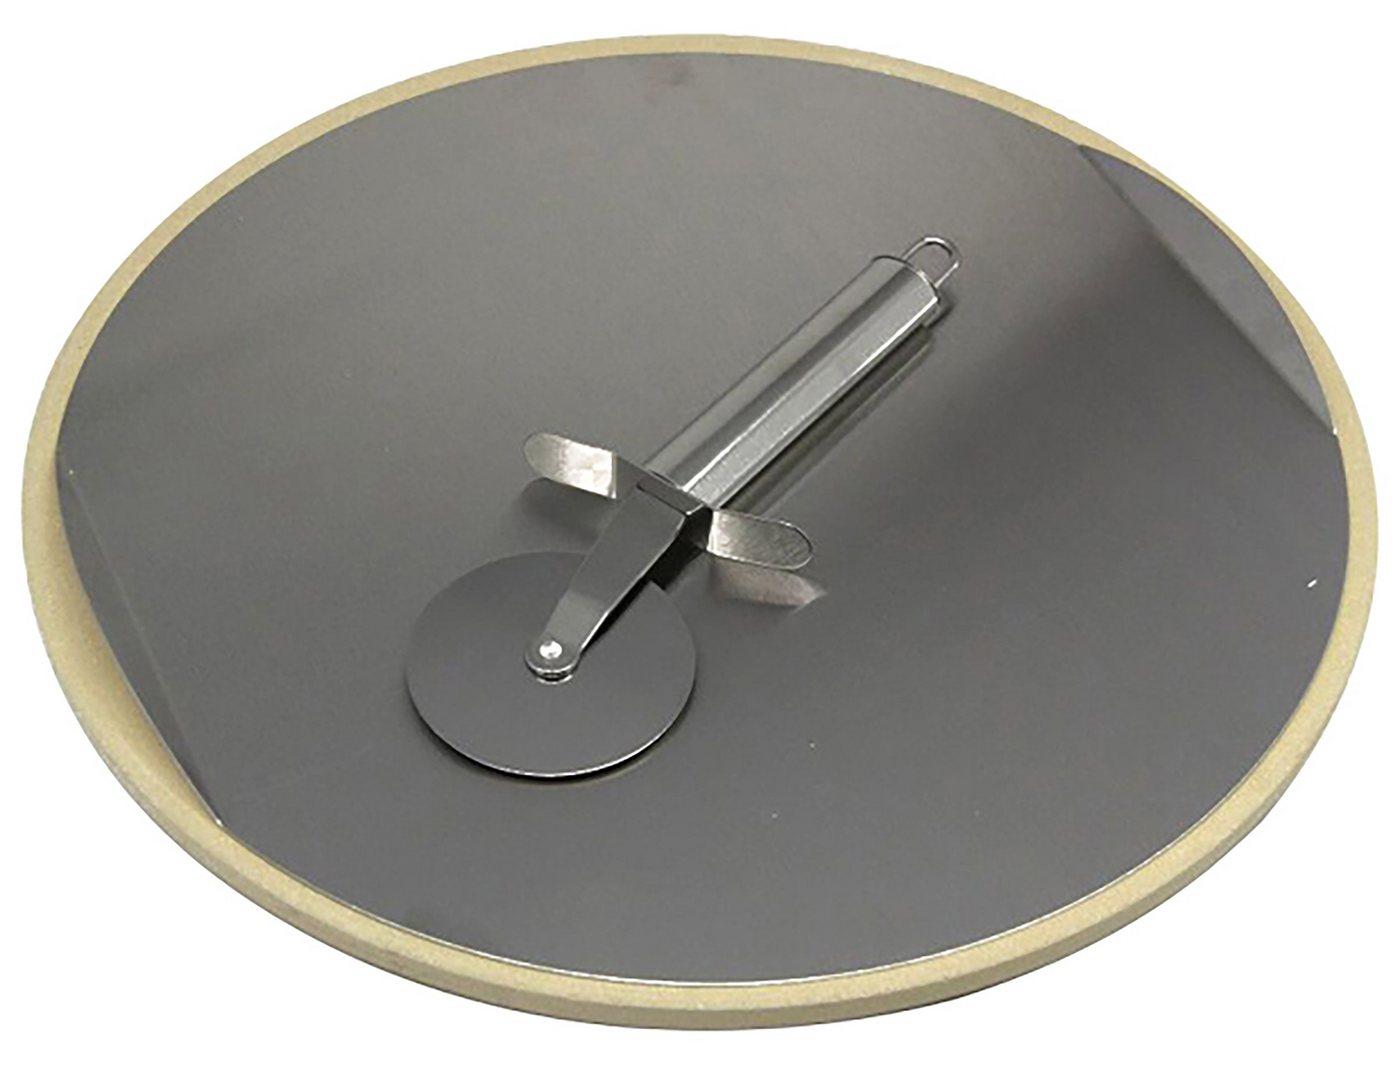 Dehner Grillbesteck-Set Pizzastein inkl. Pizzaschneider, Edelstahl Ø 33 cm, hitzebeständiges Schamotte, für Grill oder Backofen von Dehner